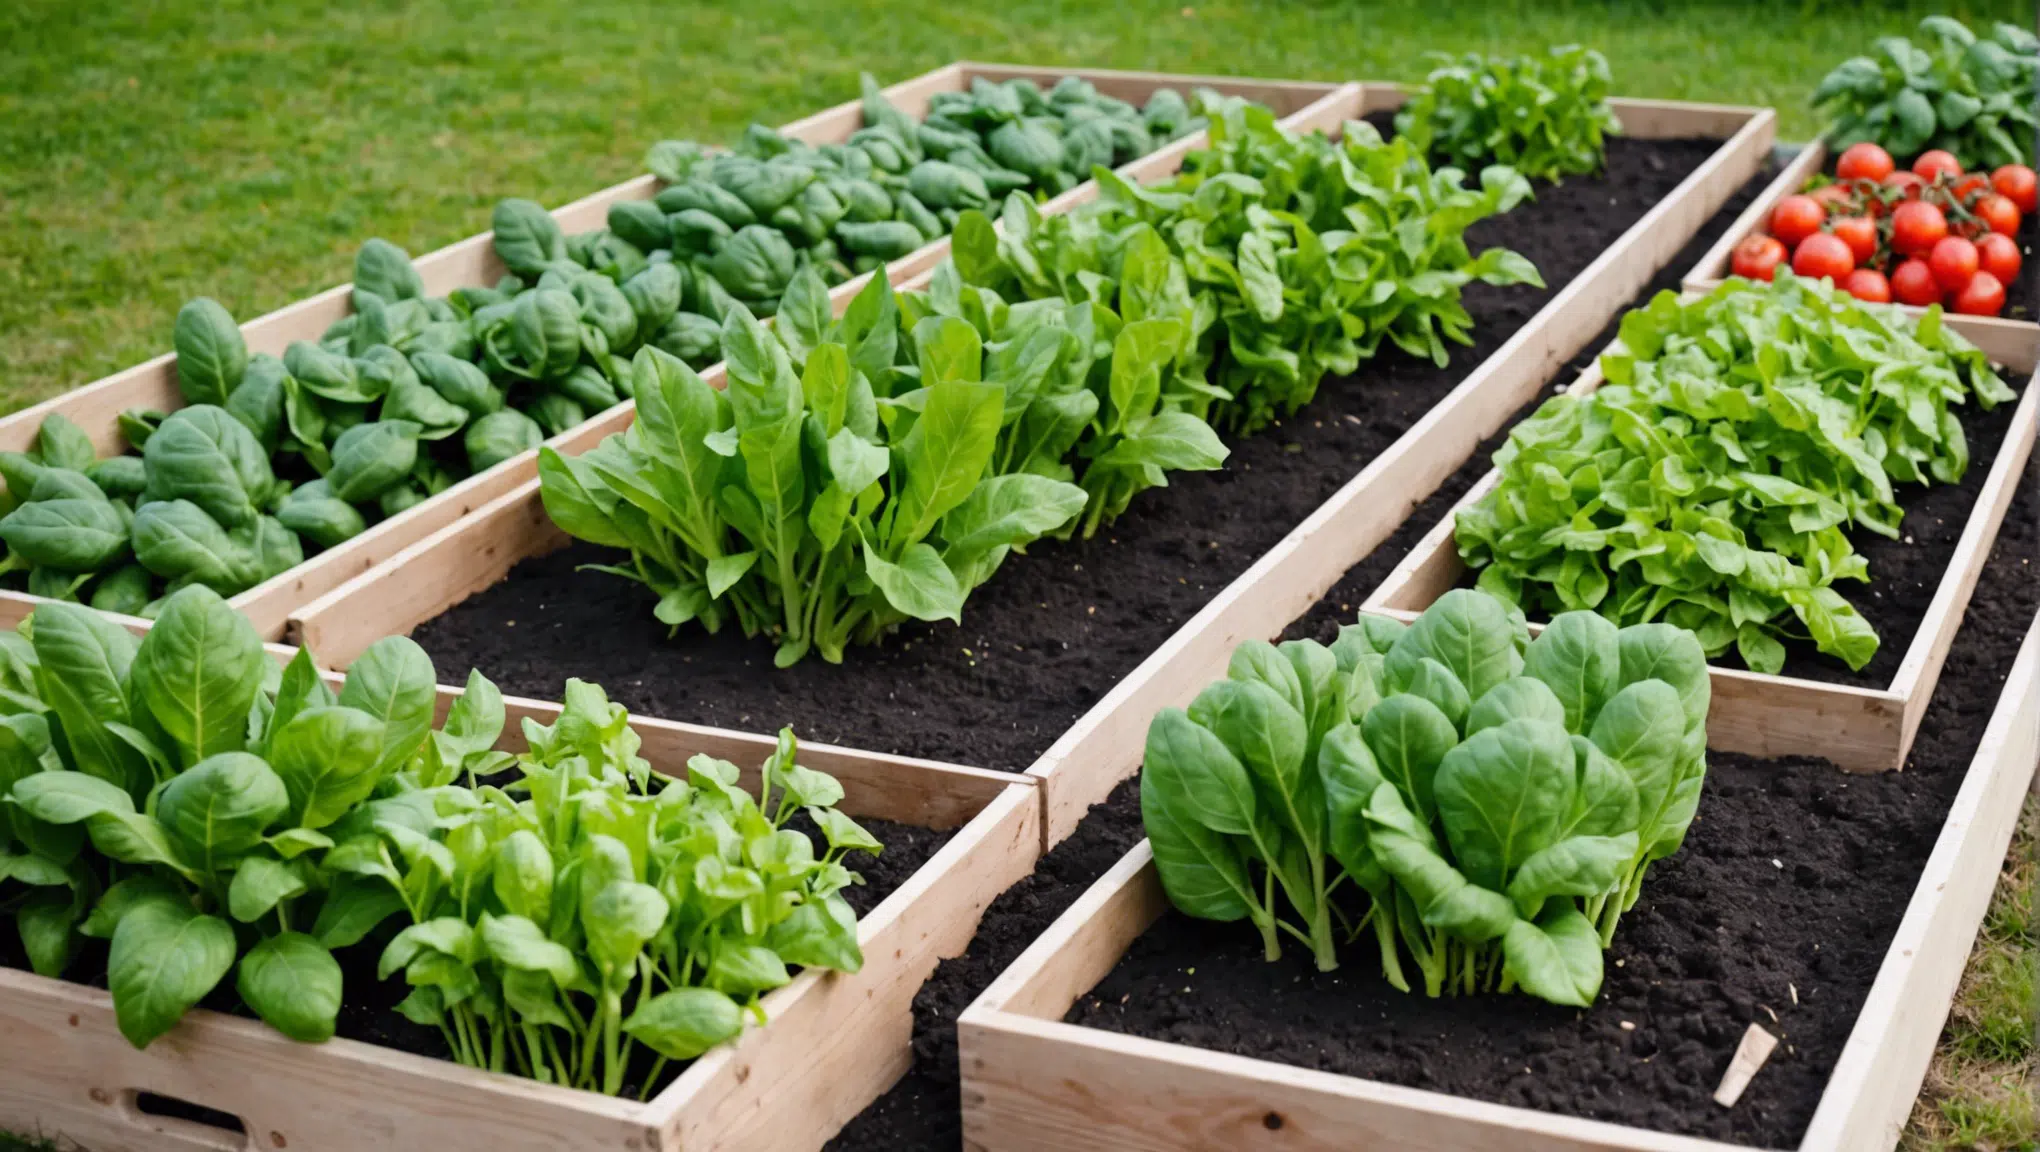 découvrez nos astuces pour cultiver des légumes incroyables sans jardin et profiter d'une récolte exceptionnelle !